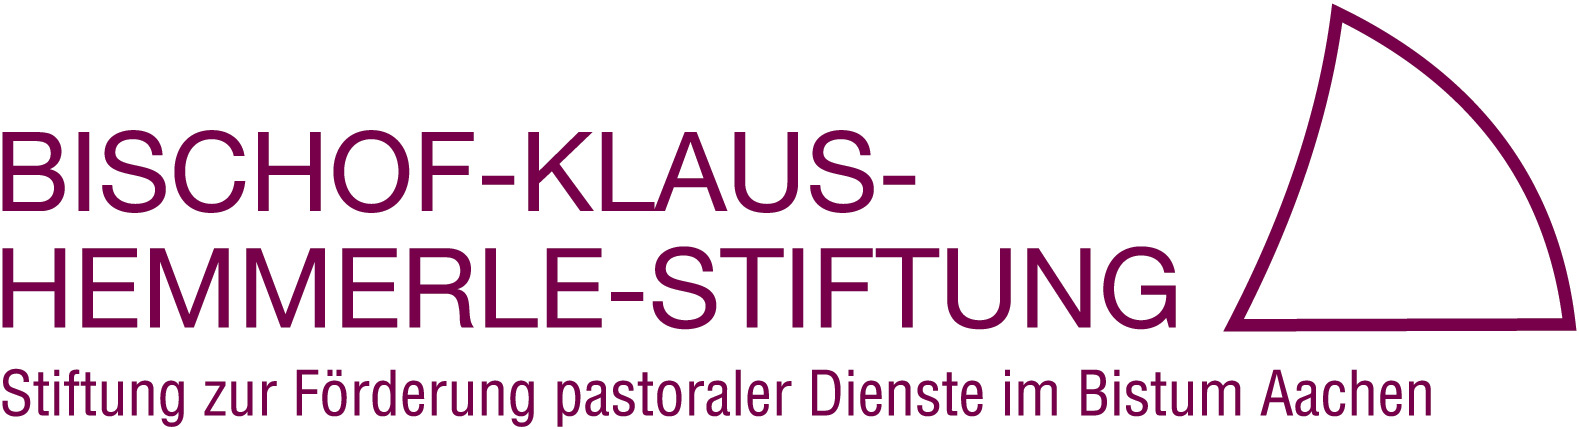 Logo Bischof-Klaus-Hemmerle-Stiftung KOPIE (c) Bistum Aachen/Stiftungen